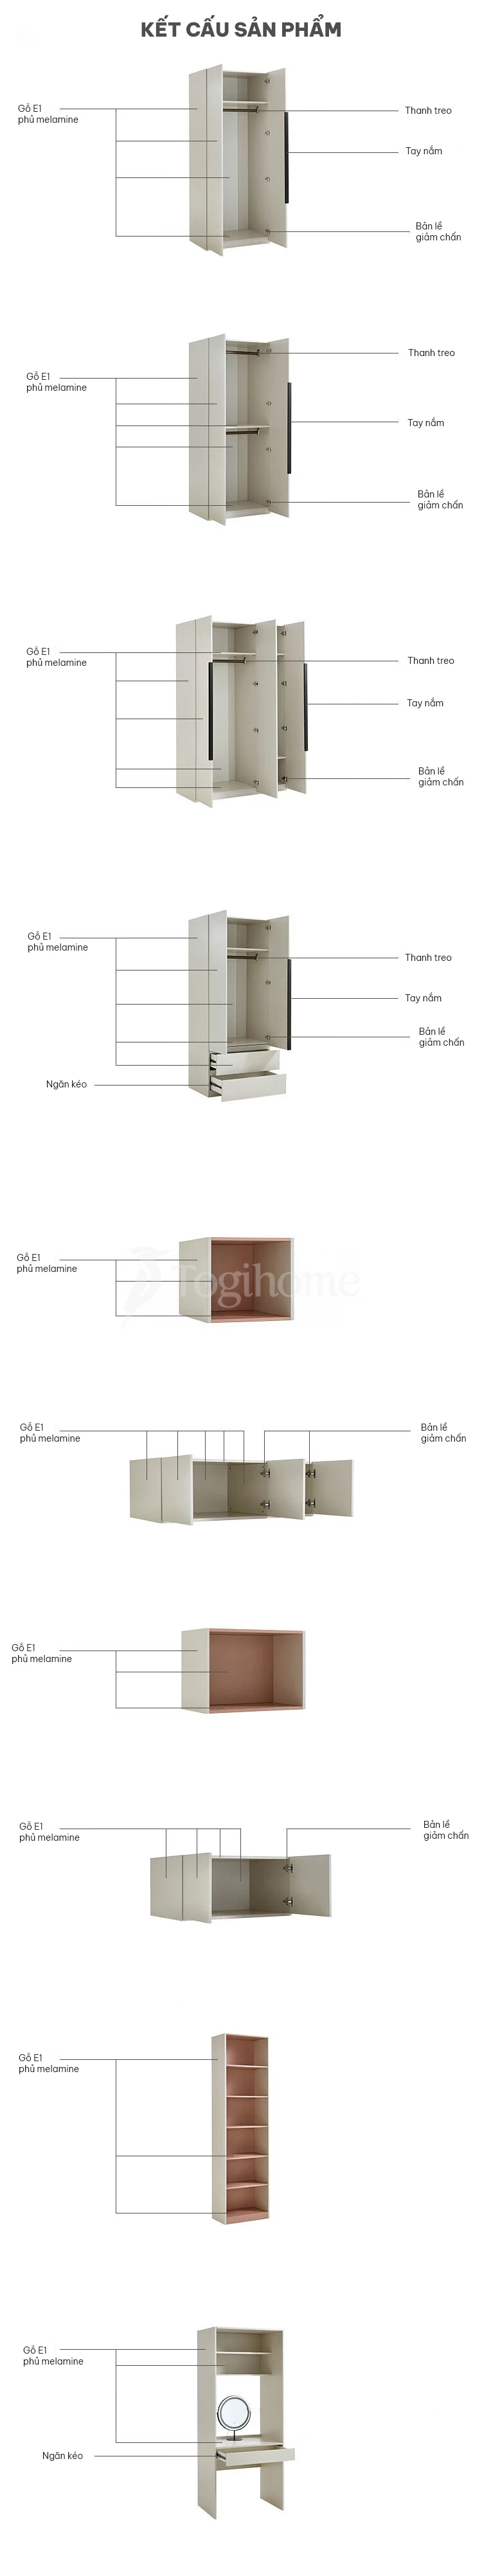 kết cấu của tủ quần áo TQA018